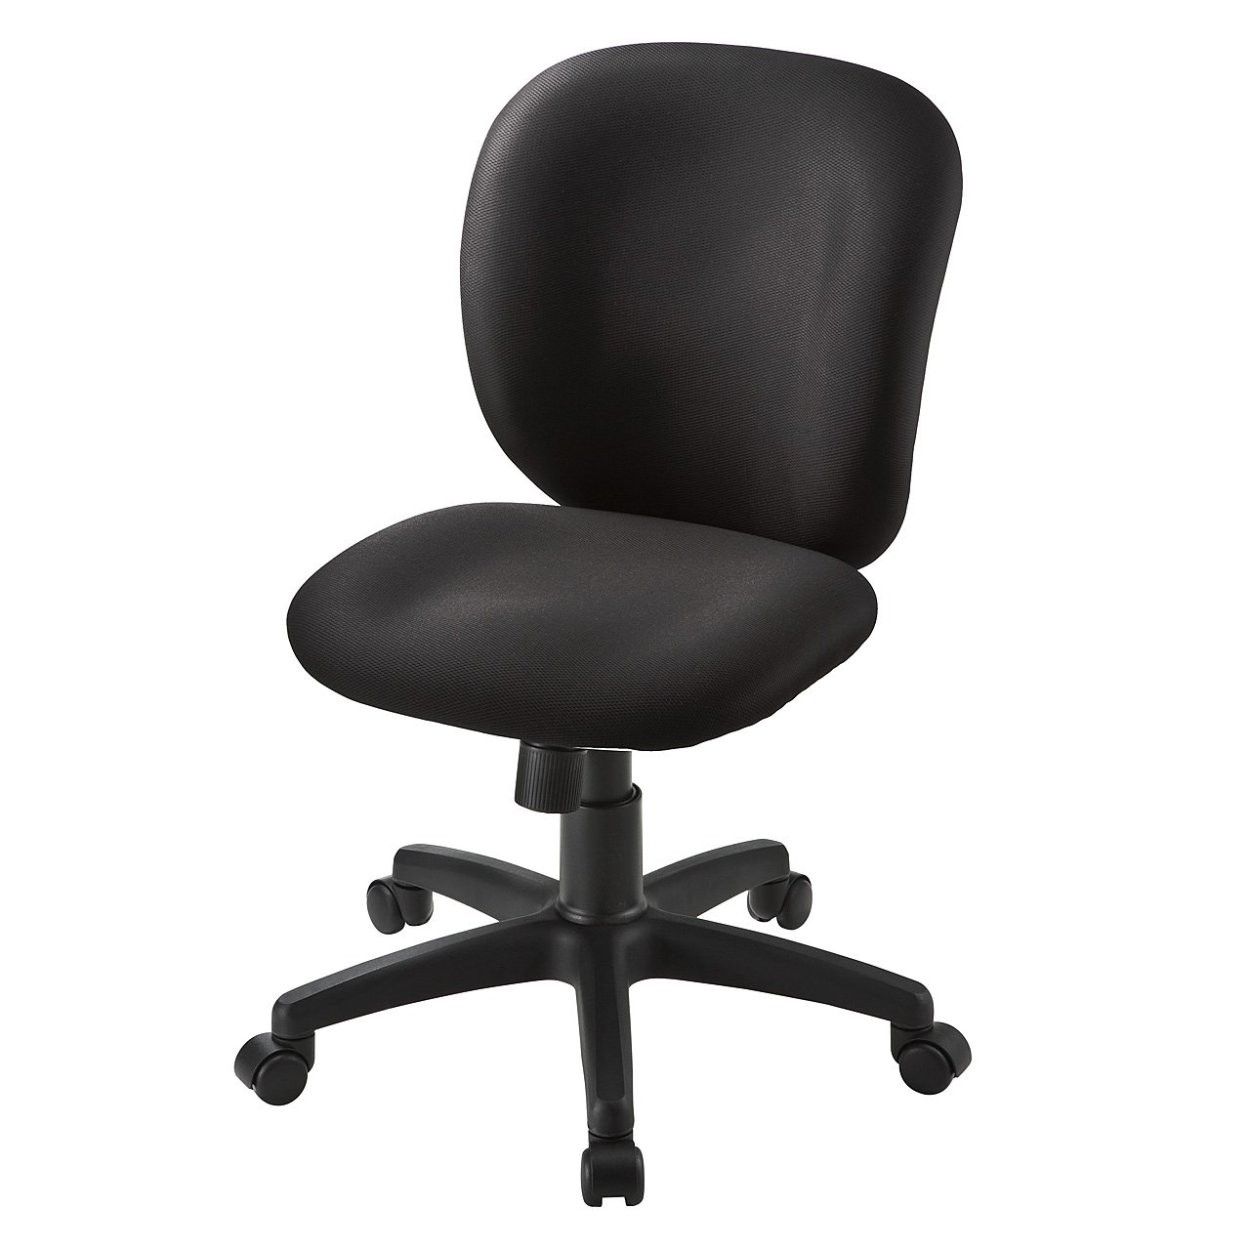 オフィスチェア パソコンチェア 事務椅子 学習椅子 オフィスチェアー デスクチェア チェア チェアー イス いす オフィス 低反発 疲れにくい  100-SNC031